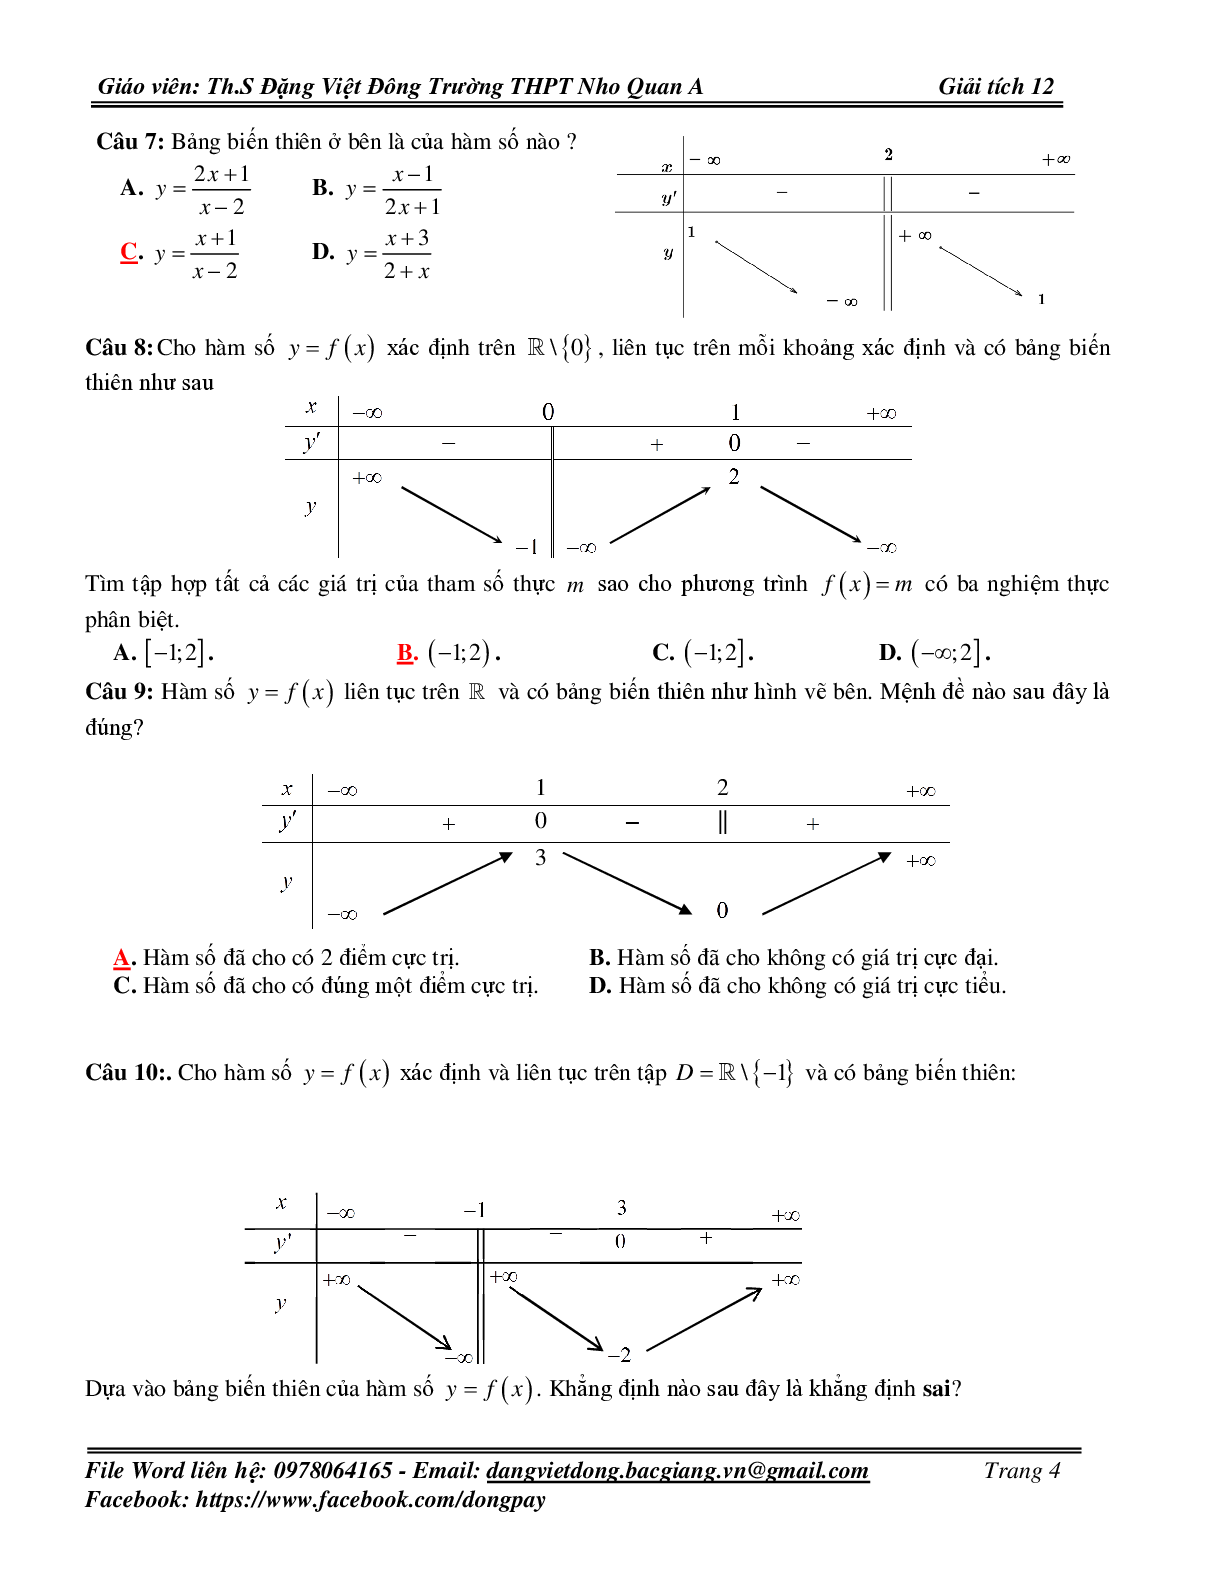 139 Bài tập trắc nghiệm về bảng biến thiên và đồ thị hàm số có đáp án 2023 (trang 4)